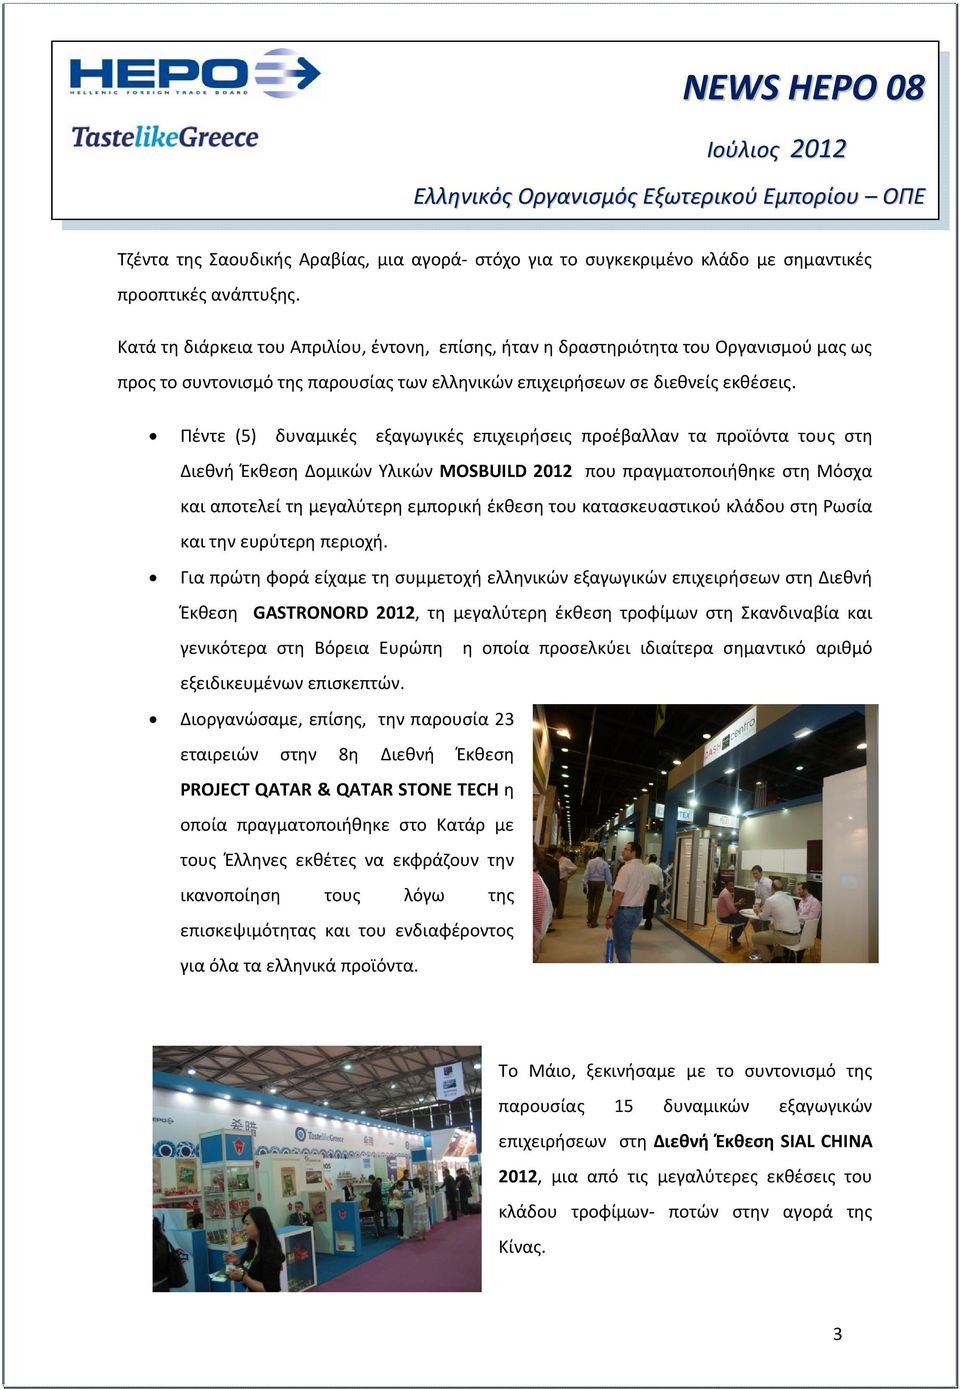 Πέντε (5) δυναμικές εξαγωγικές επιχειρήσεις προέβαλλαν τα προϊόντα τους στη Διεθνή Έκθεση Δομικών Υλικών MOSBUILD 2012 που πραγματοποιήθηκε στη Μόσχα και αποτελεί τη μεγαλύτερη εμπορική έκθεση του